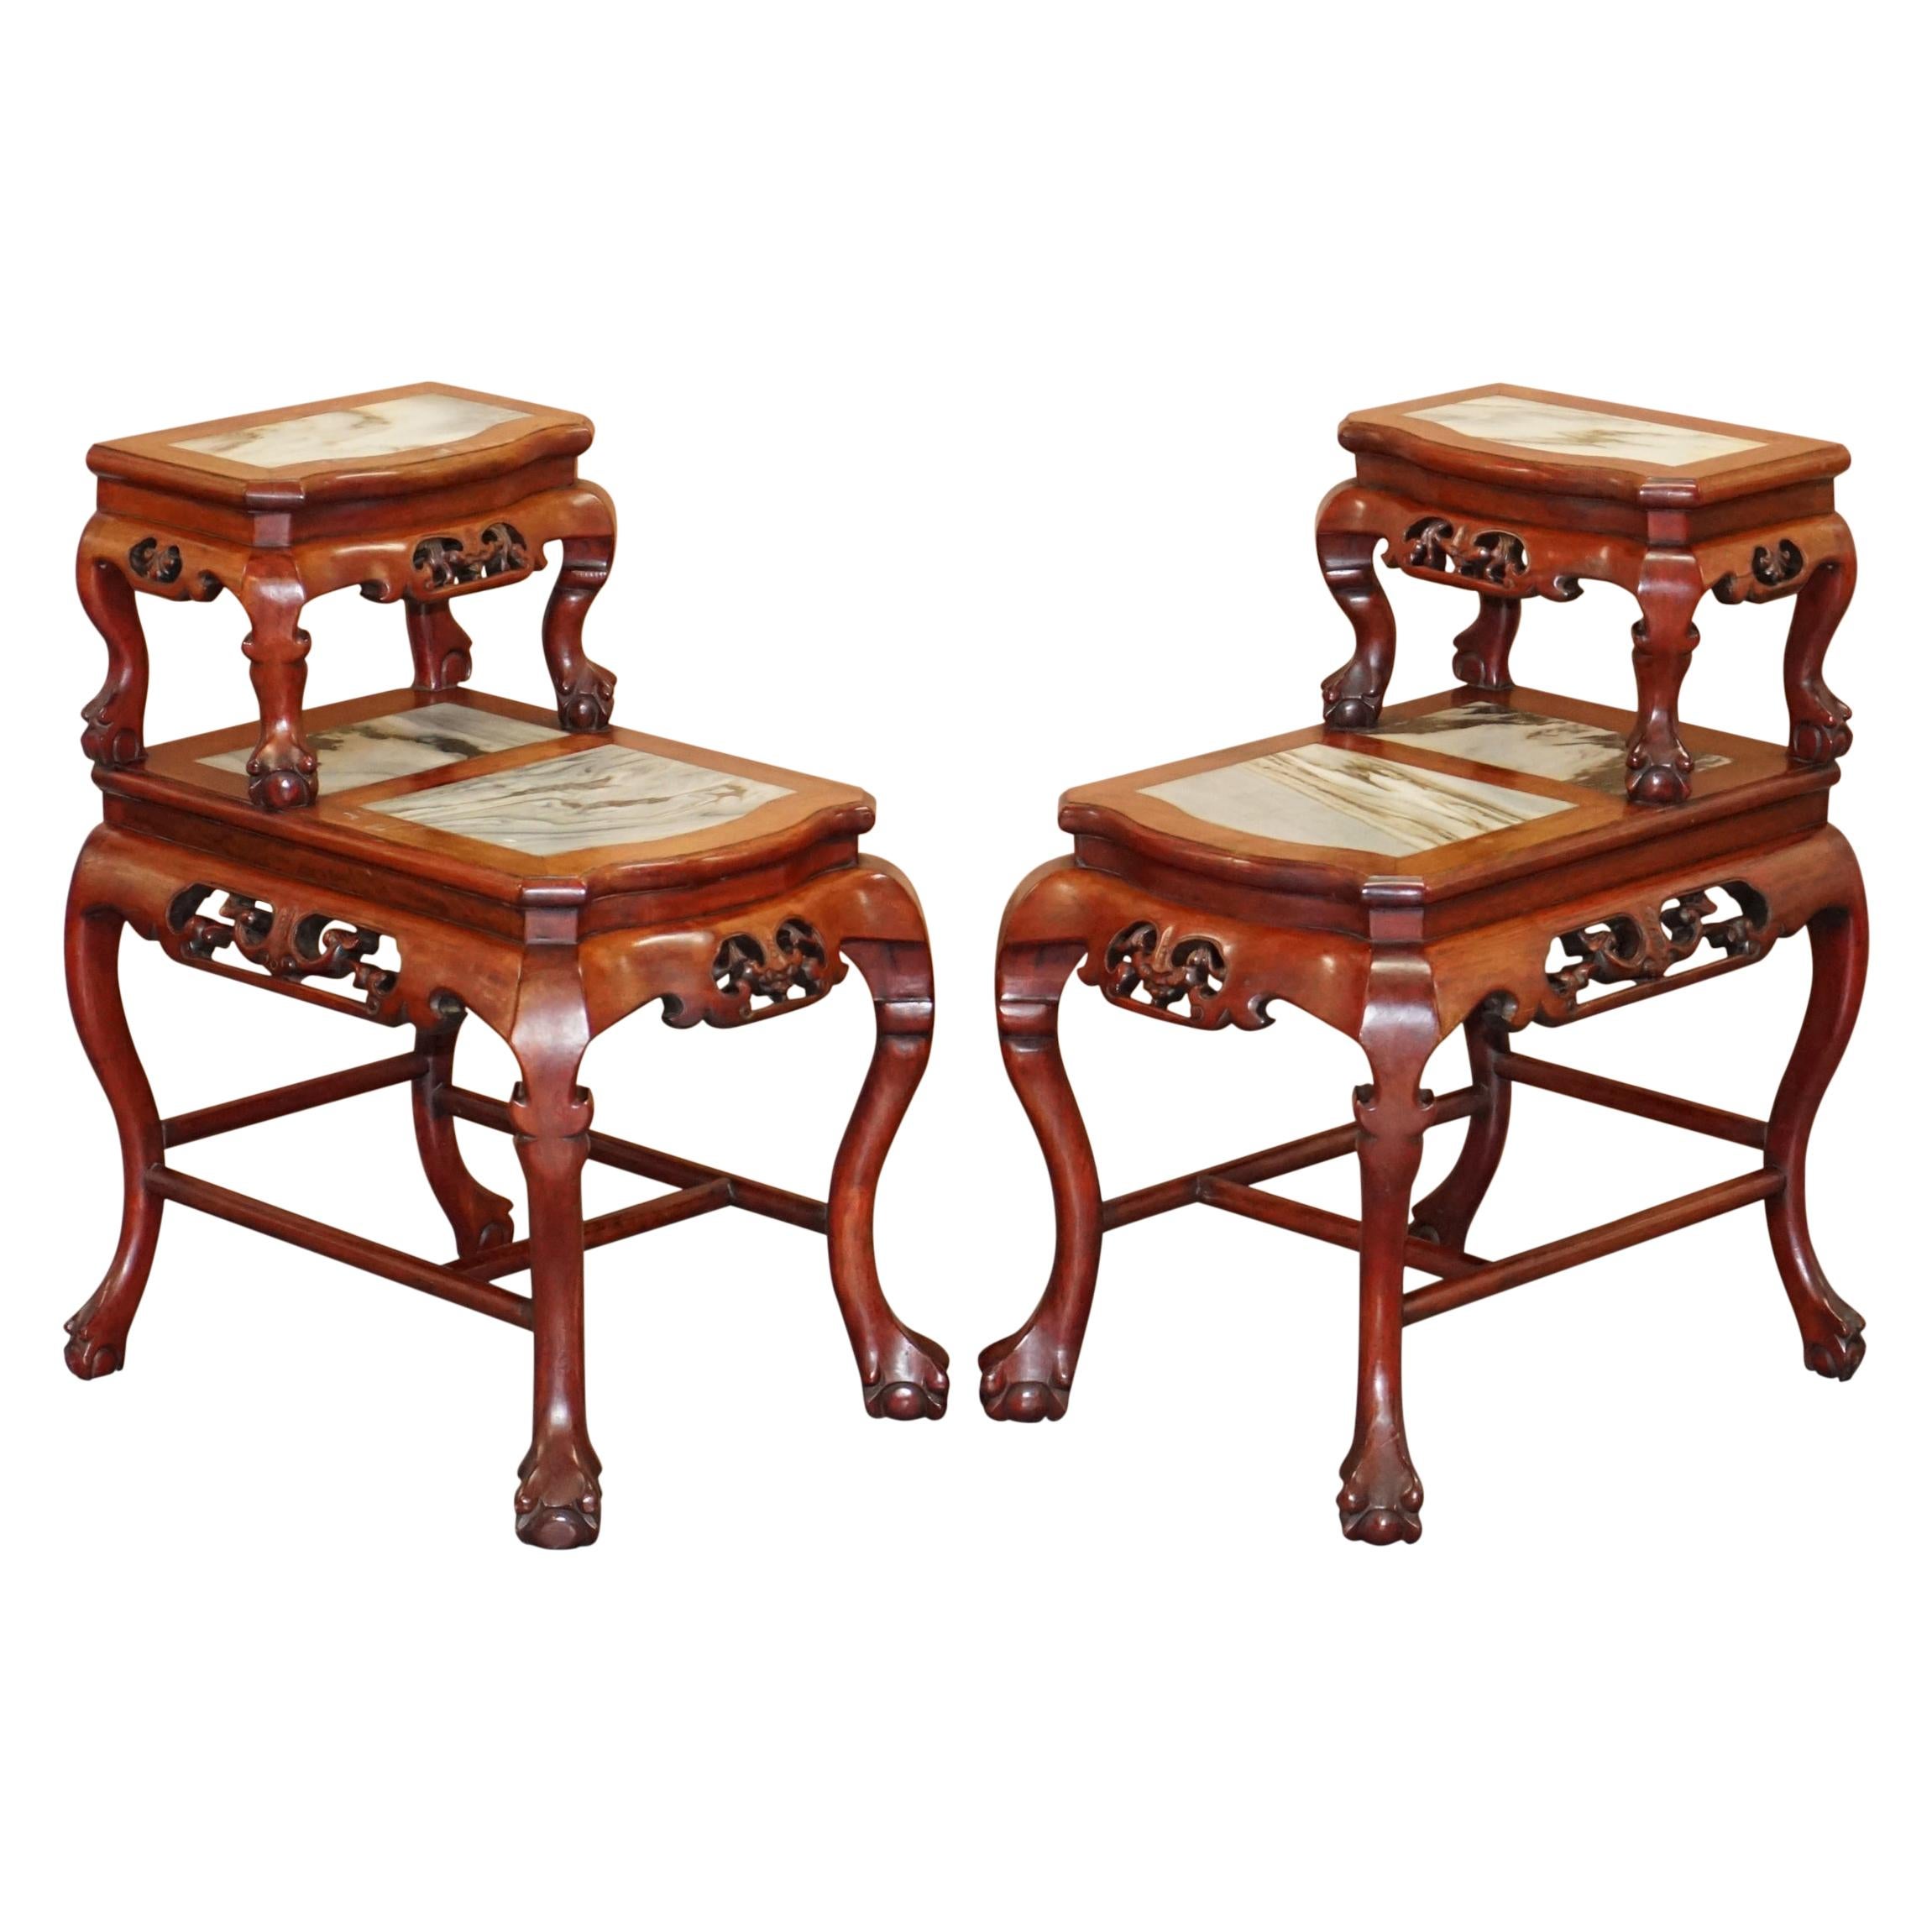 Paire de tables d'appoint chinoises en marbre et bois de feuillus sculptées à la main avec pieds en griffe et boule